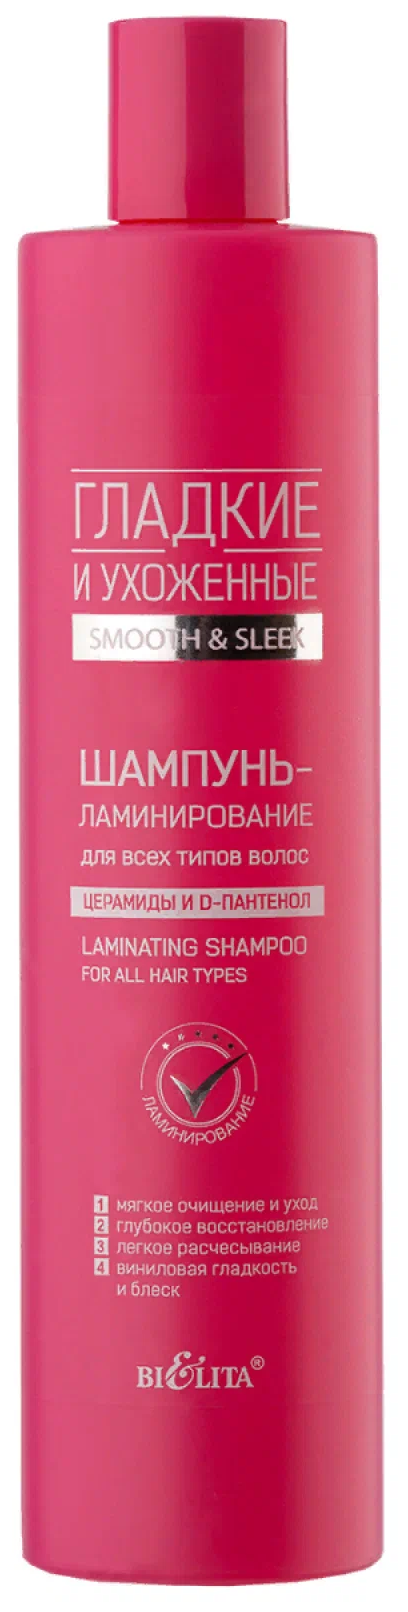 Гладкие и ухоженные шампунь-ламинированине д/всех типов волос 400 мл.